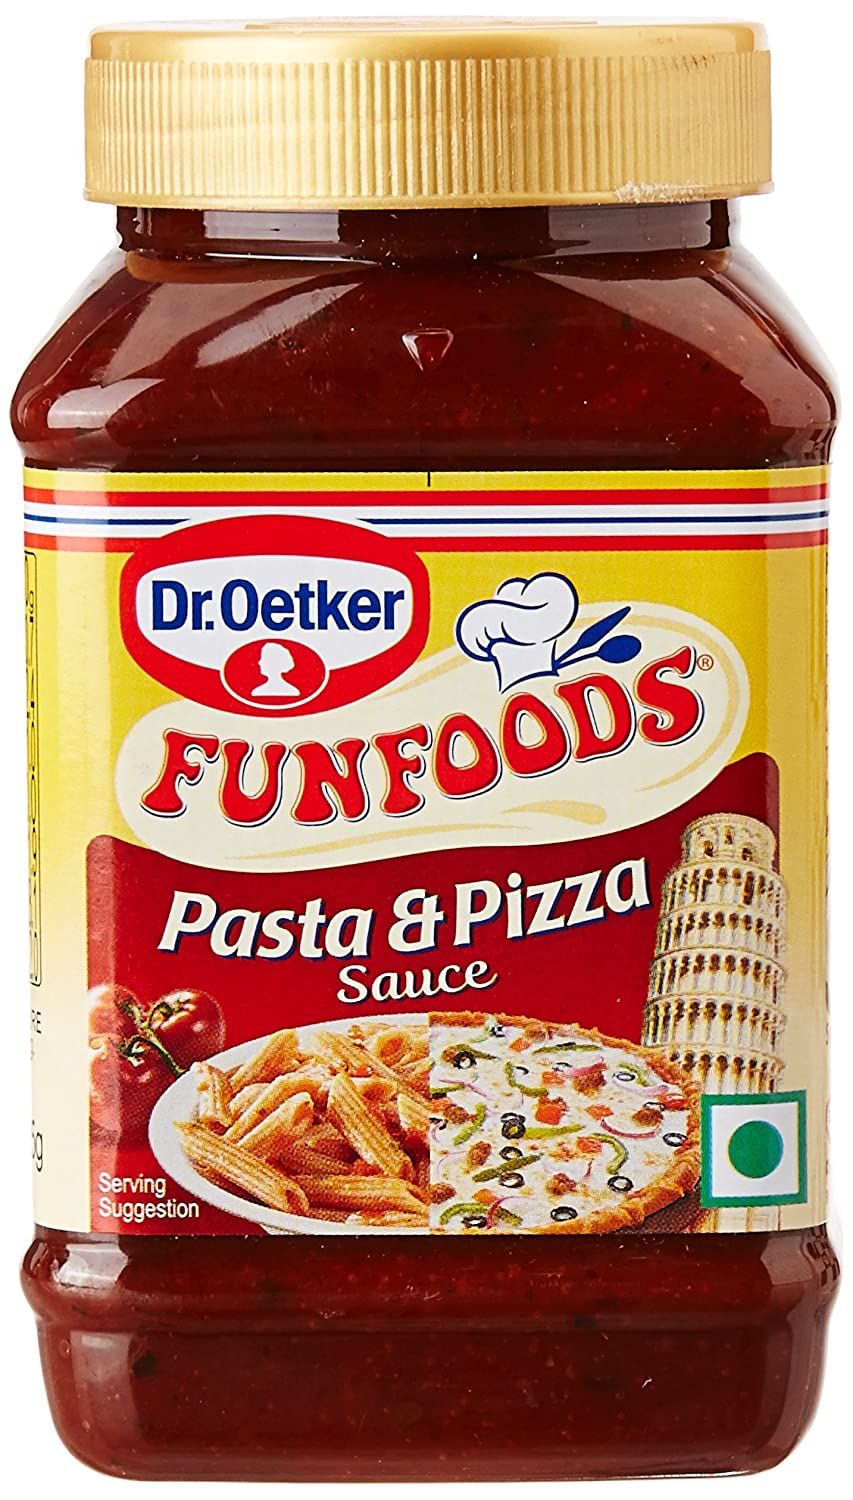 Dr Oetker Pasta & Pizza Sauce Image